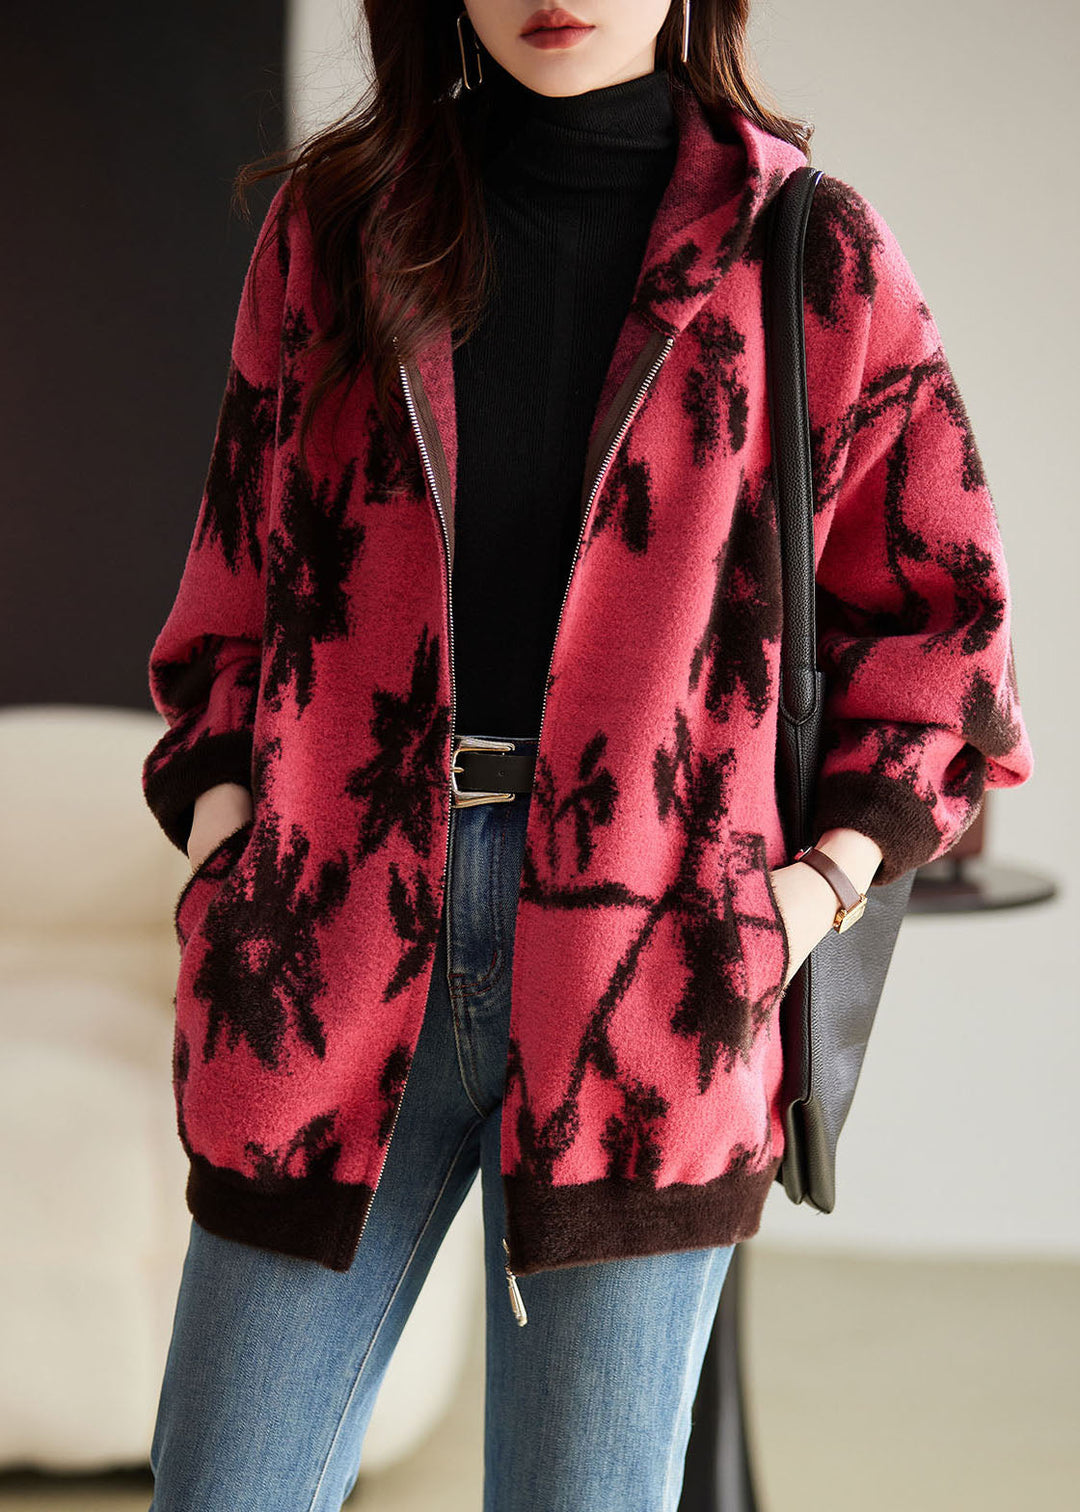 Modern Rose Print Zippered Thick Woolen Hoodies Coat Fall